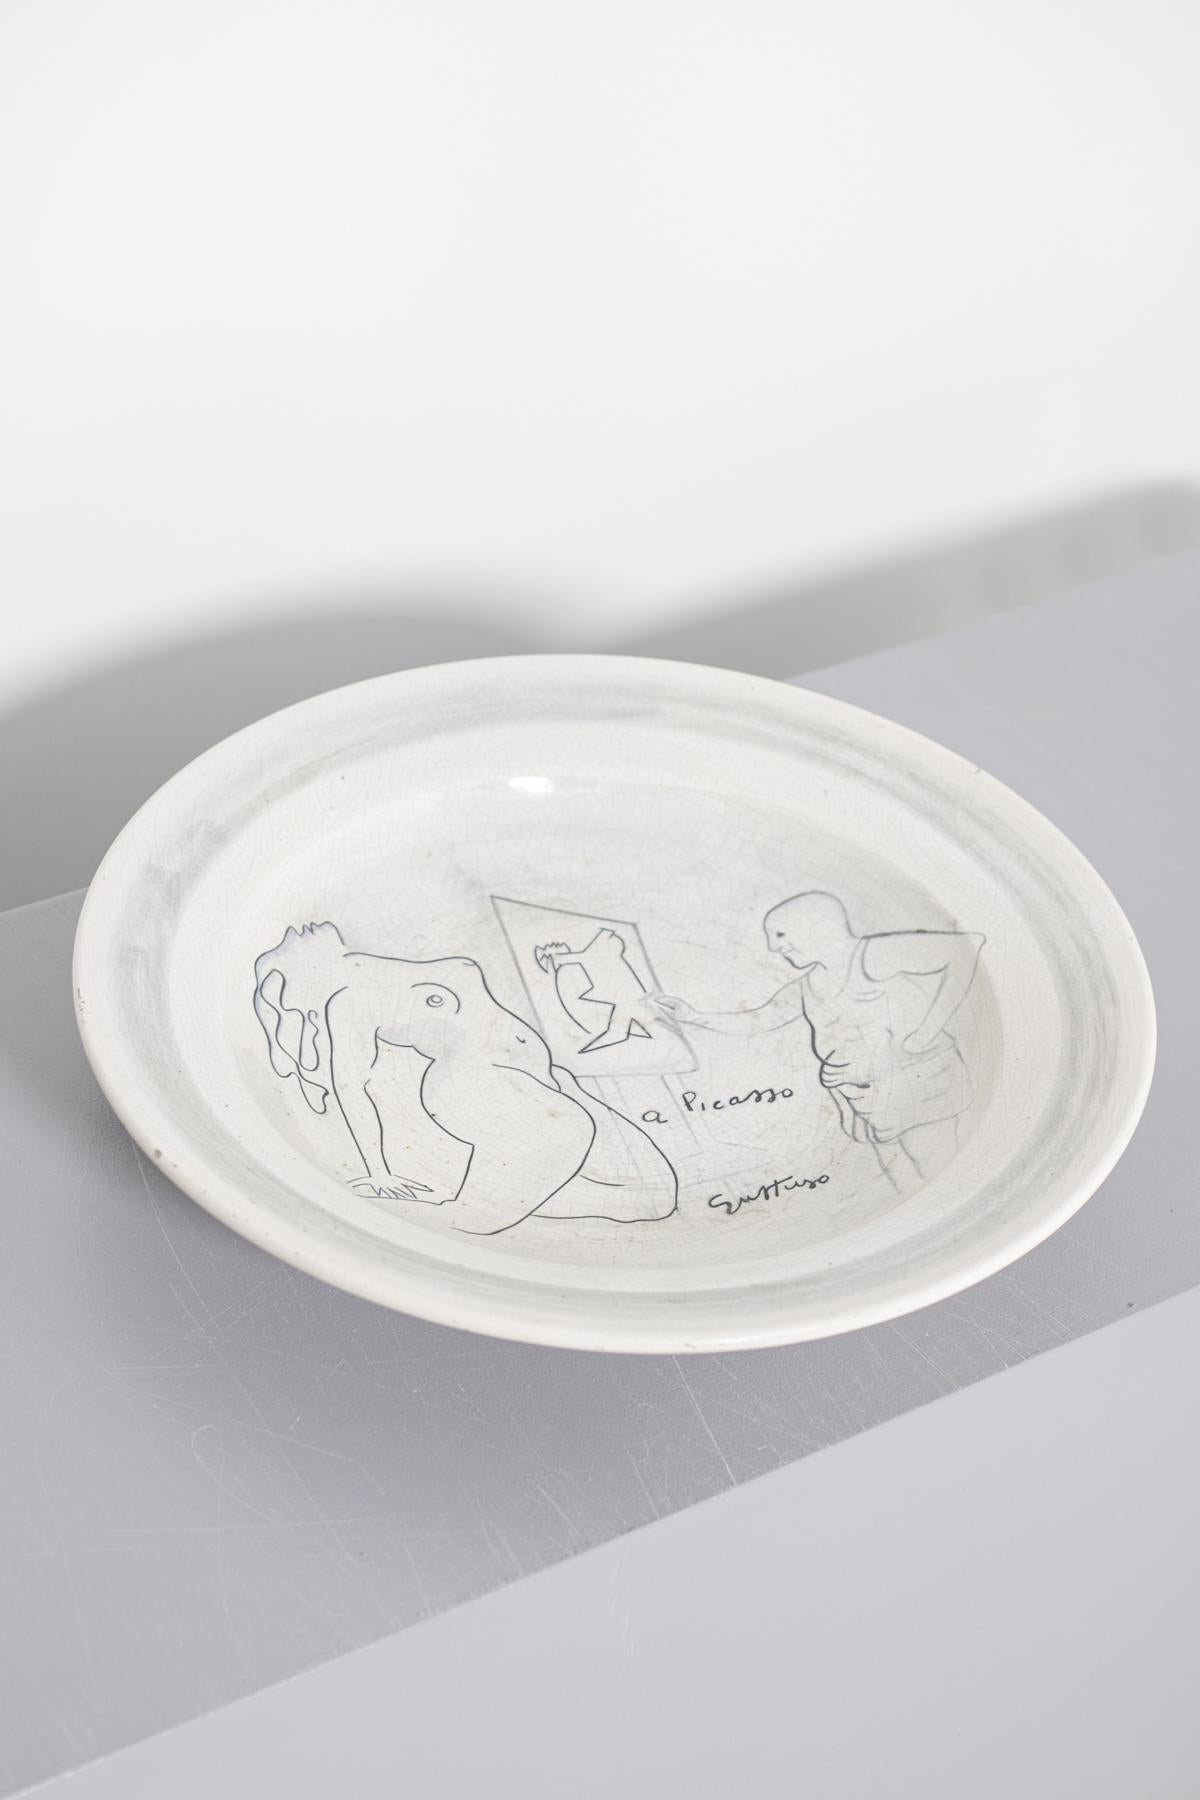 Renato Guttuso Ceramic Centre Dish as a Homage to Picasso, Numerd, 1980s 8